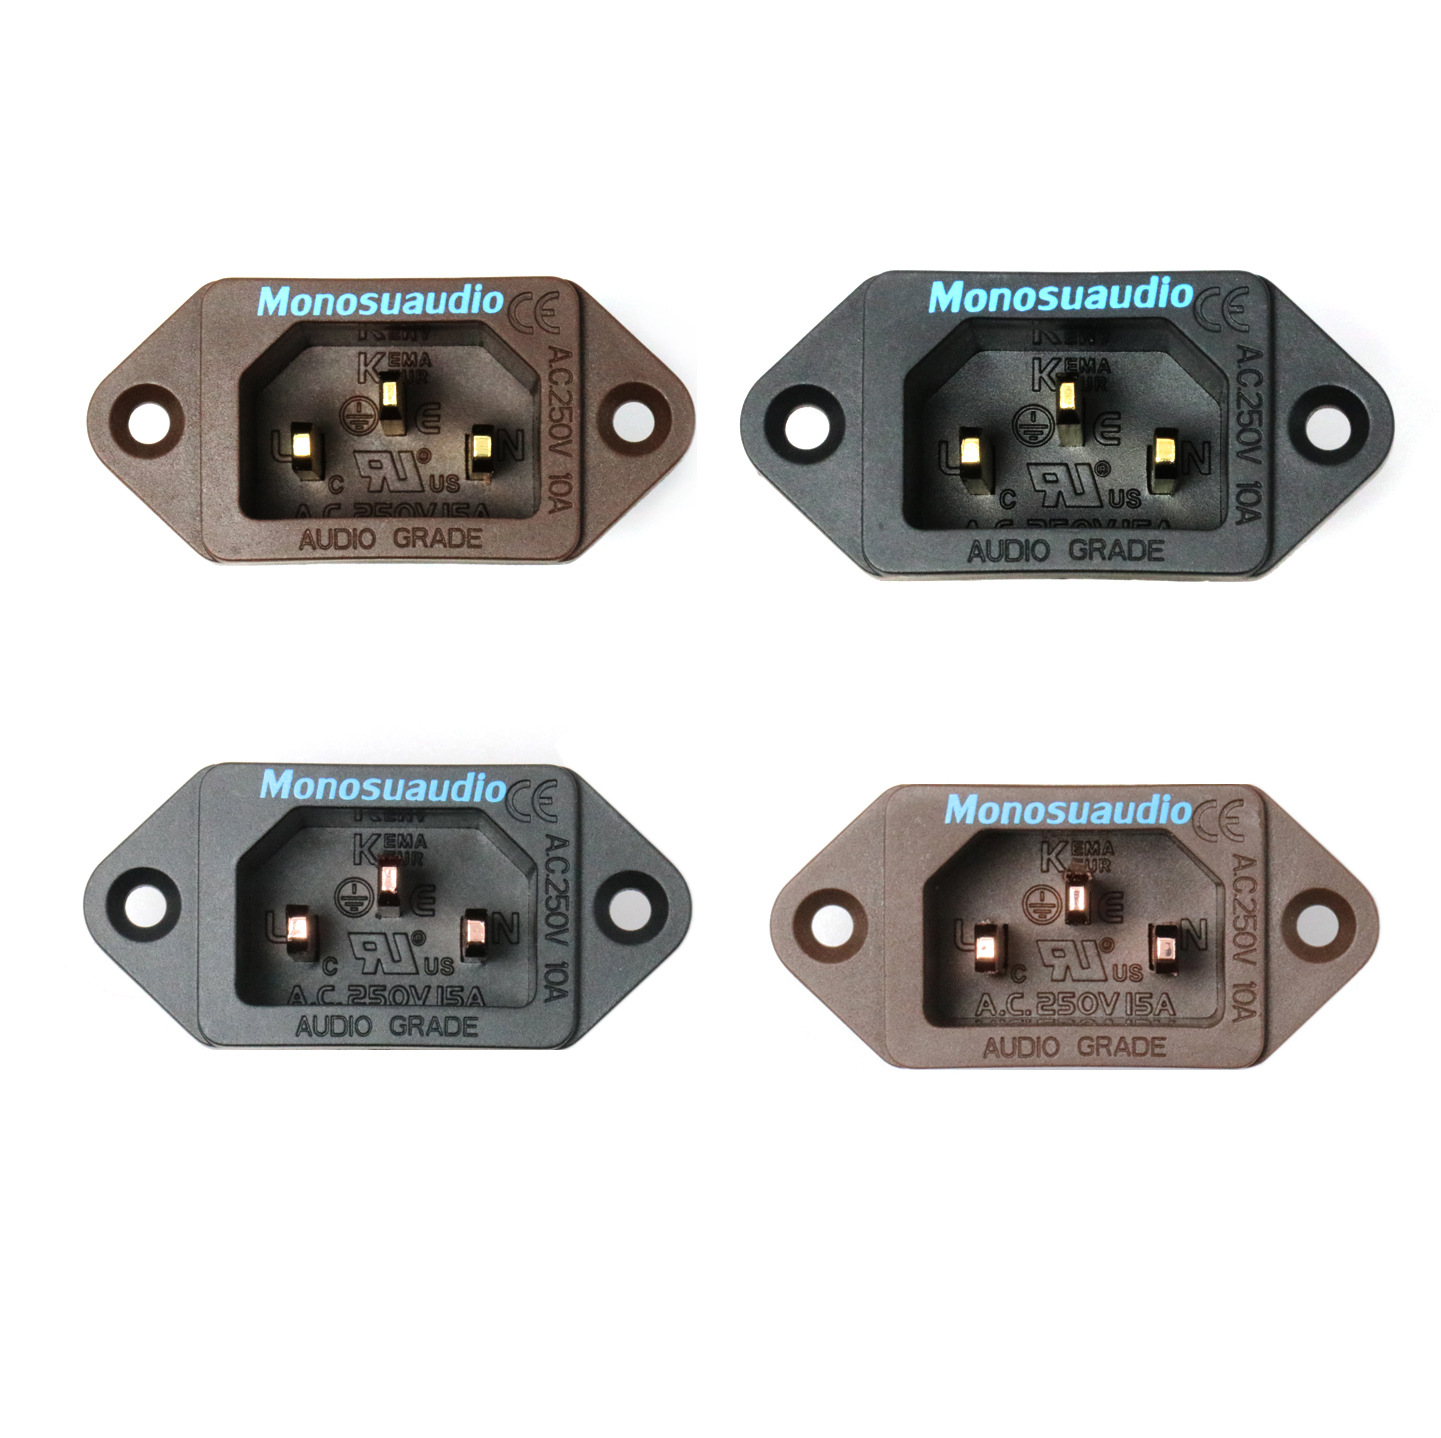 Monosaudio-IB70-AC-250V-10A-Power-Socket-Plug-for-Amplifier-Power-Supply-Solder-free-for-Speaker-Amp-1840188-7